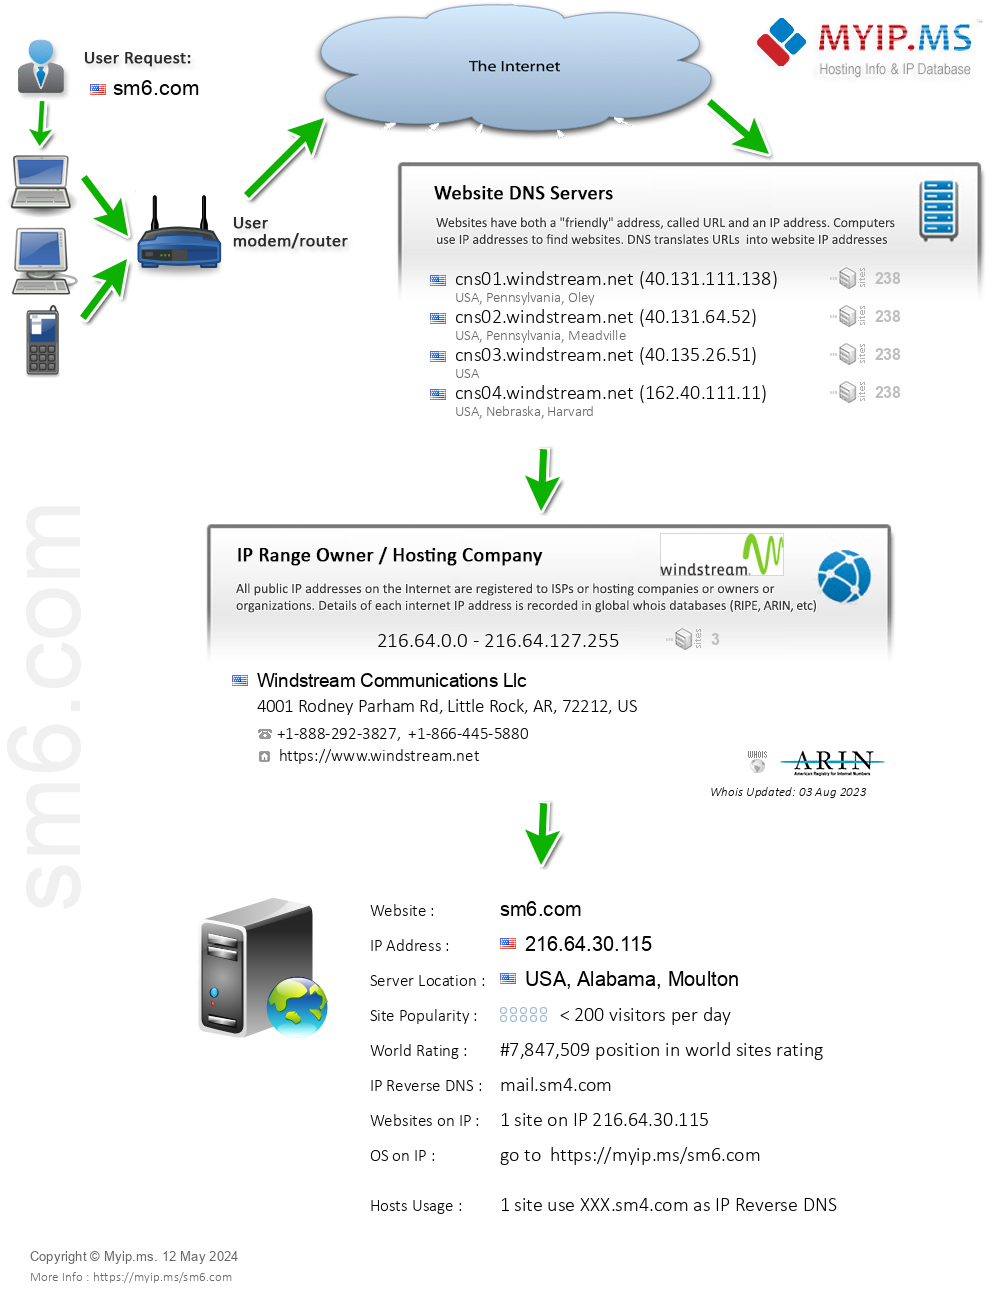 Sm6.com - Website Hosting Visual IP Diagram